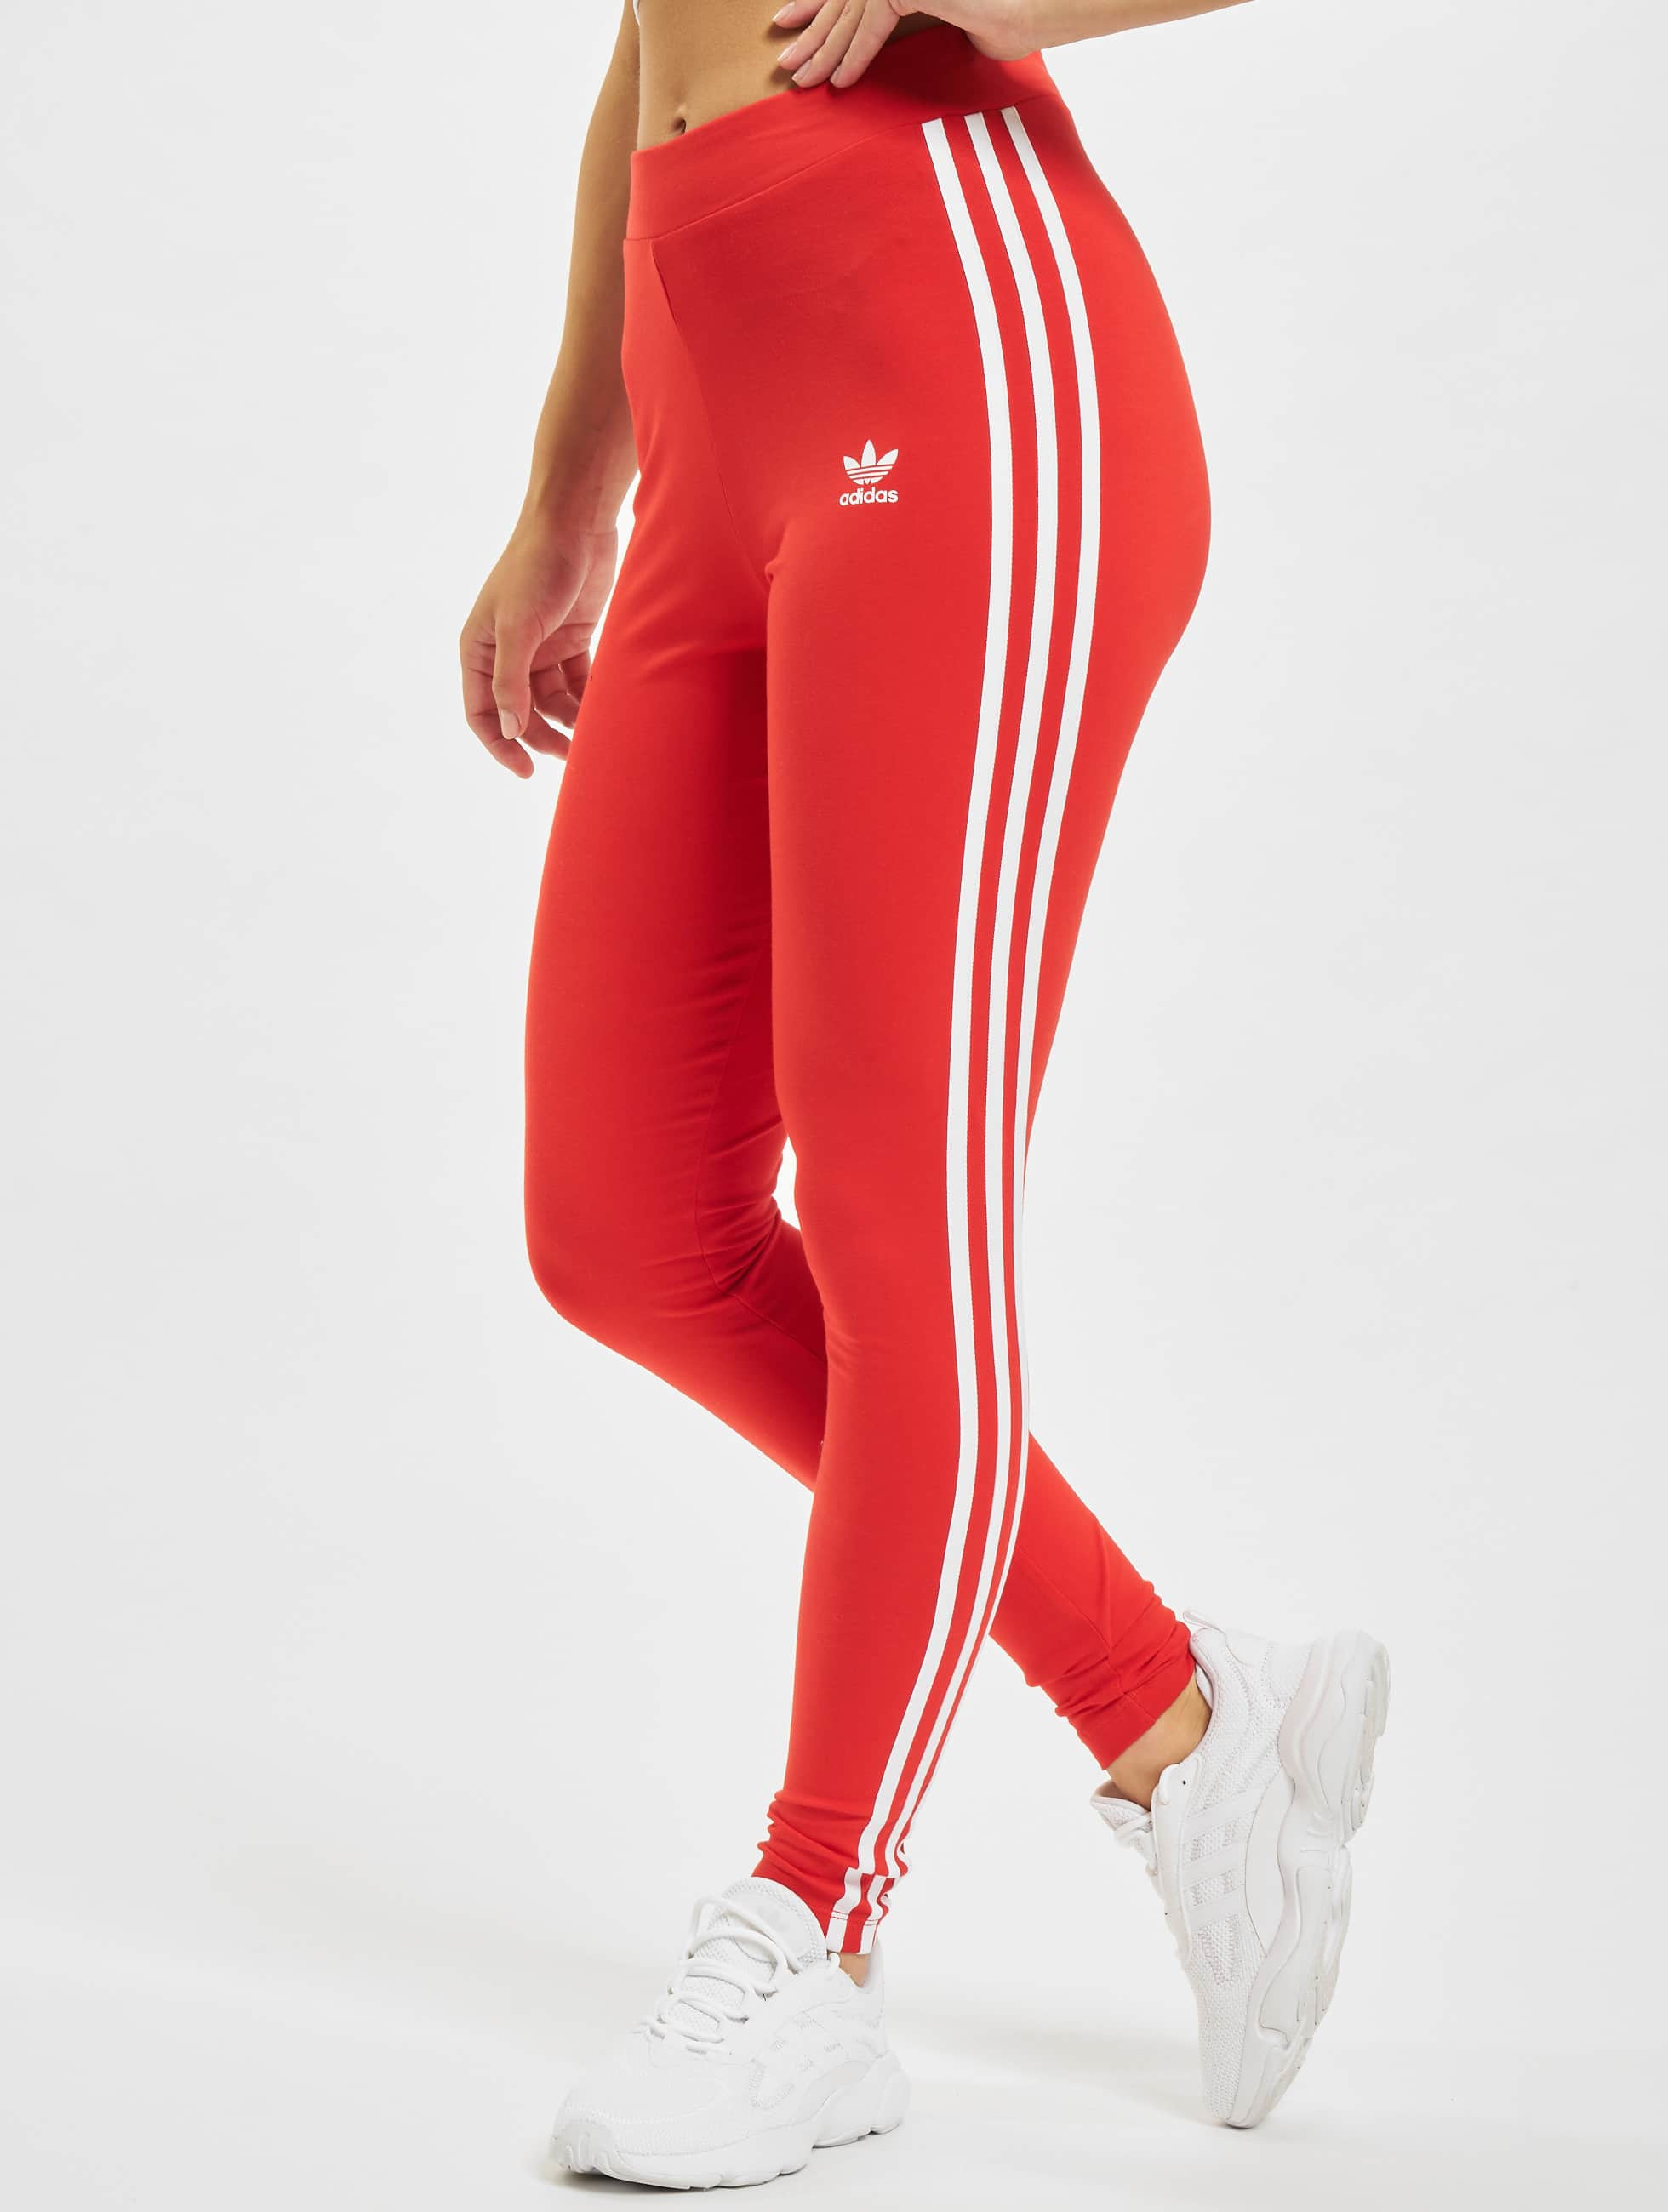 Behoren Uitbeelding voor adidas Originals broek / Legging Originals 3 Stripes in rood 834768